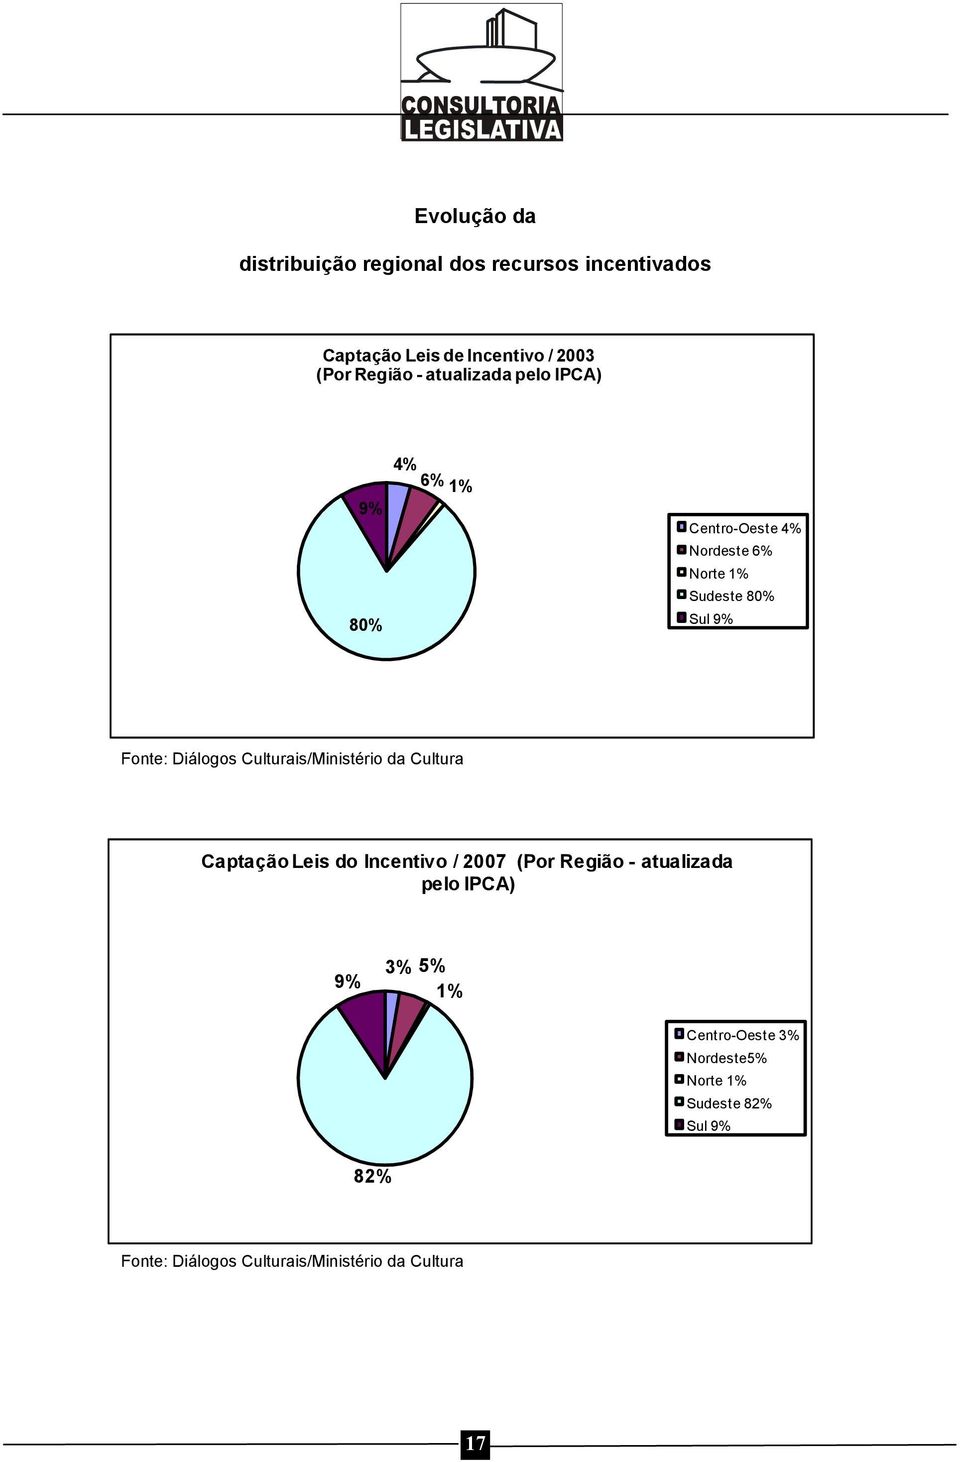 Culturais/Ministério da Cultura Captação Leis do Incentivo / 2007 (Por Região - atualizada pelo IPCA) 9% 3% 5%